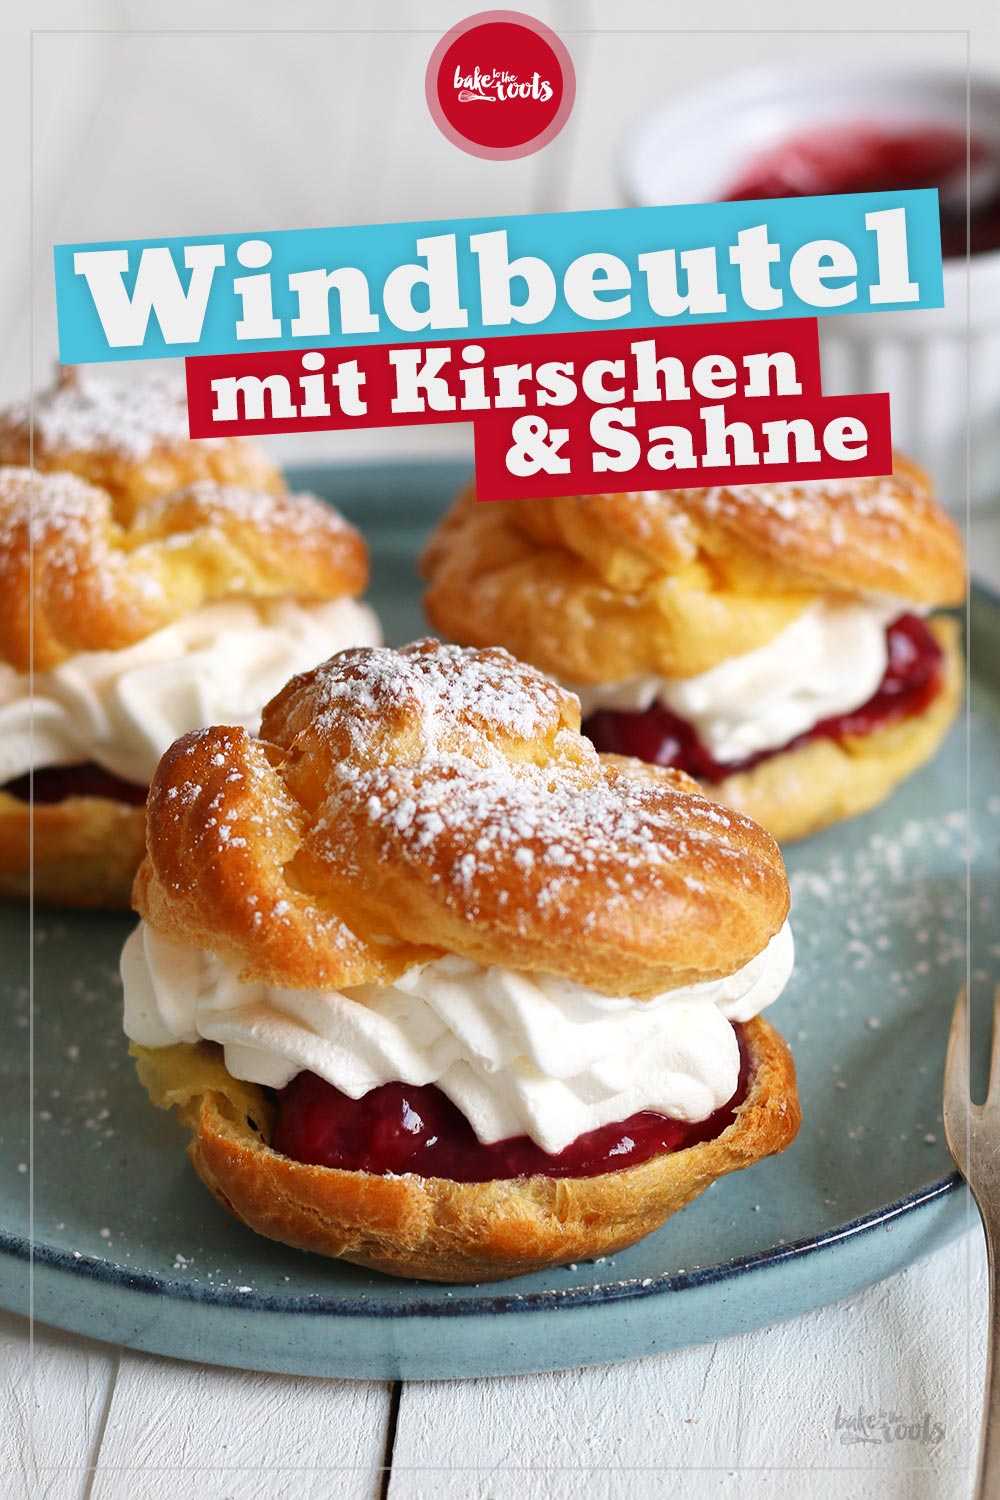 Windbeutel mit Kirschen & Sahne | Bake to the roots